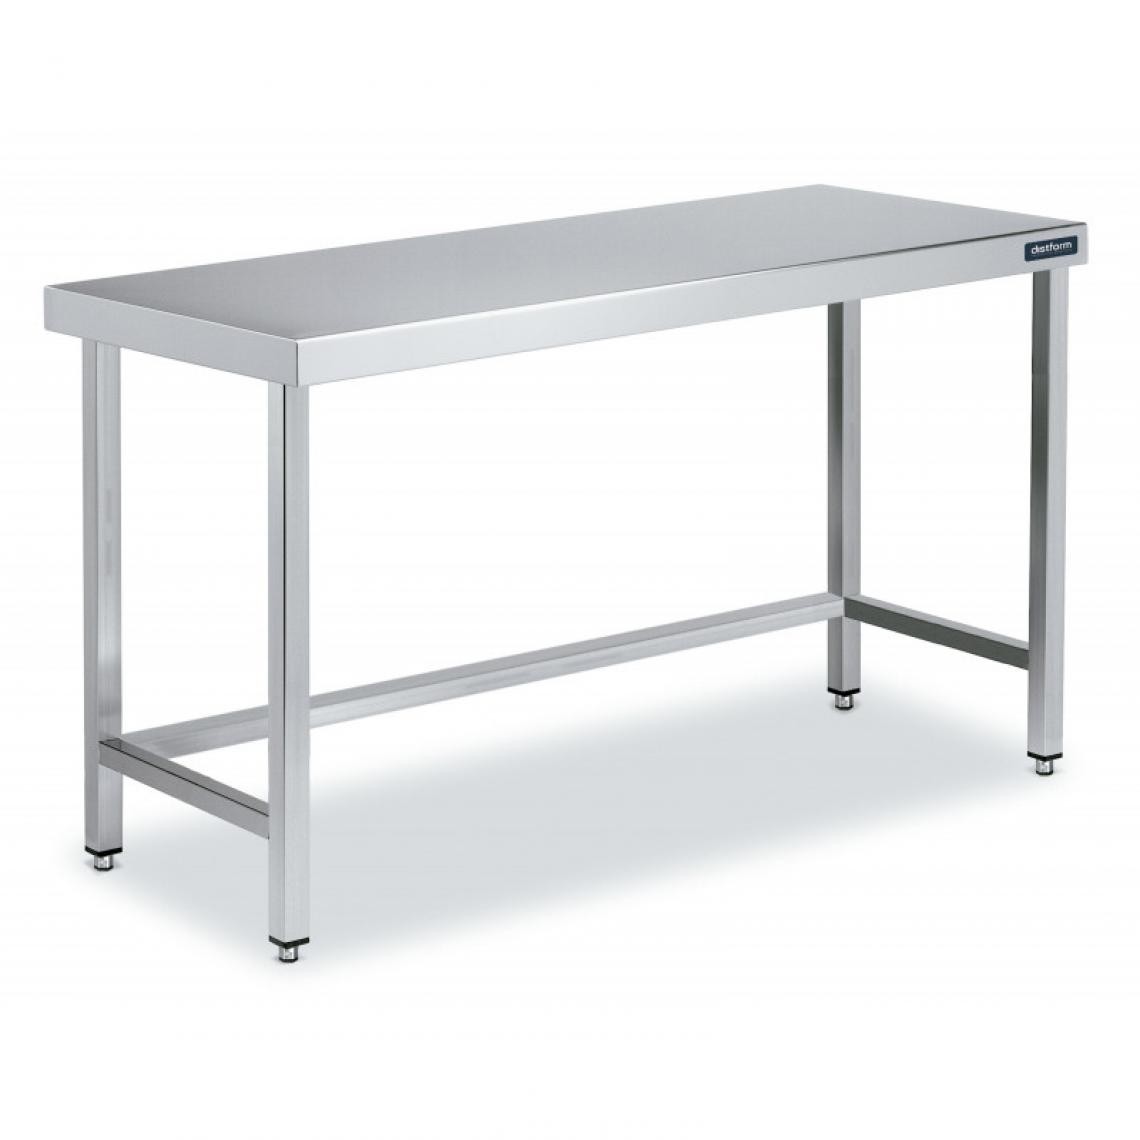 DISTFORM - Table Centrale en Inox avec renforts Profondeur 600mm - Distform - Acier inoxydable2000x600 - Tables à manger